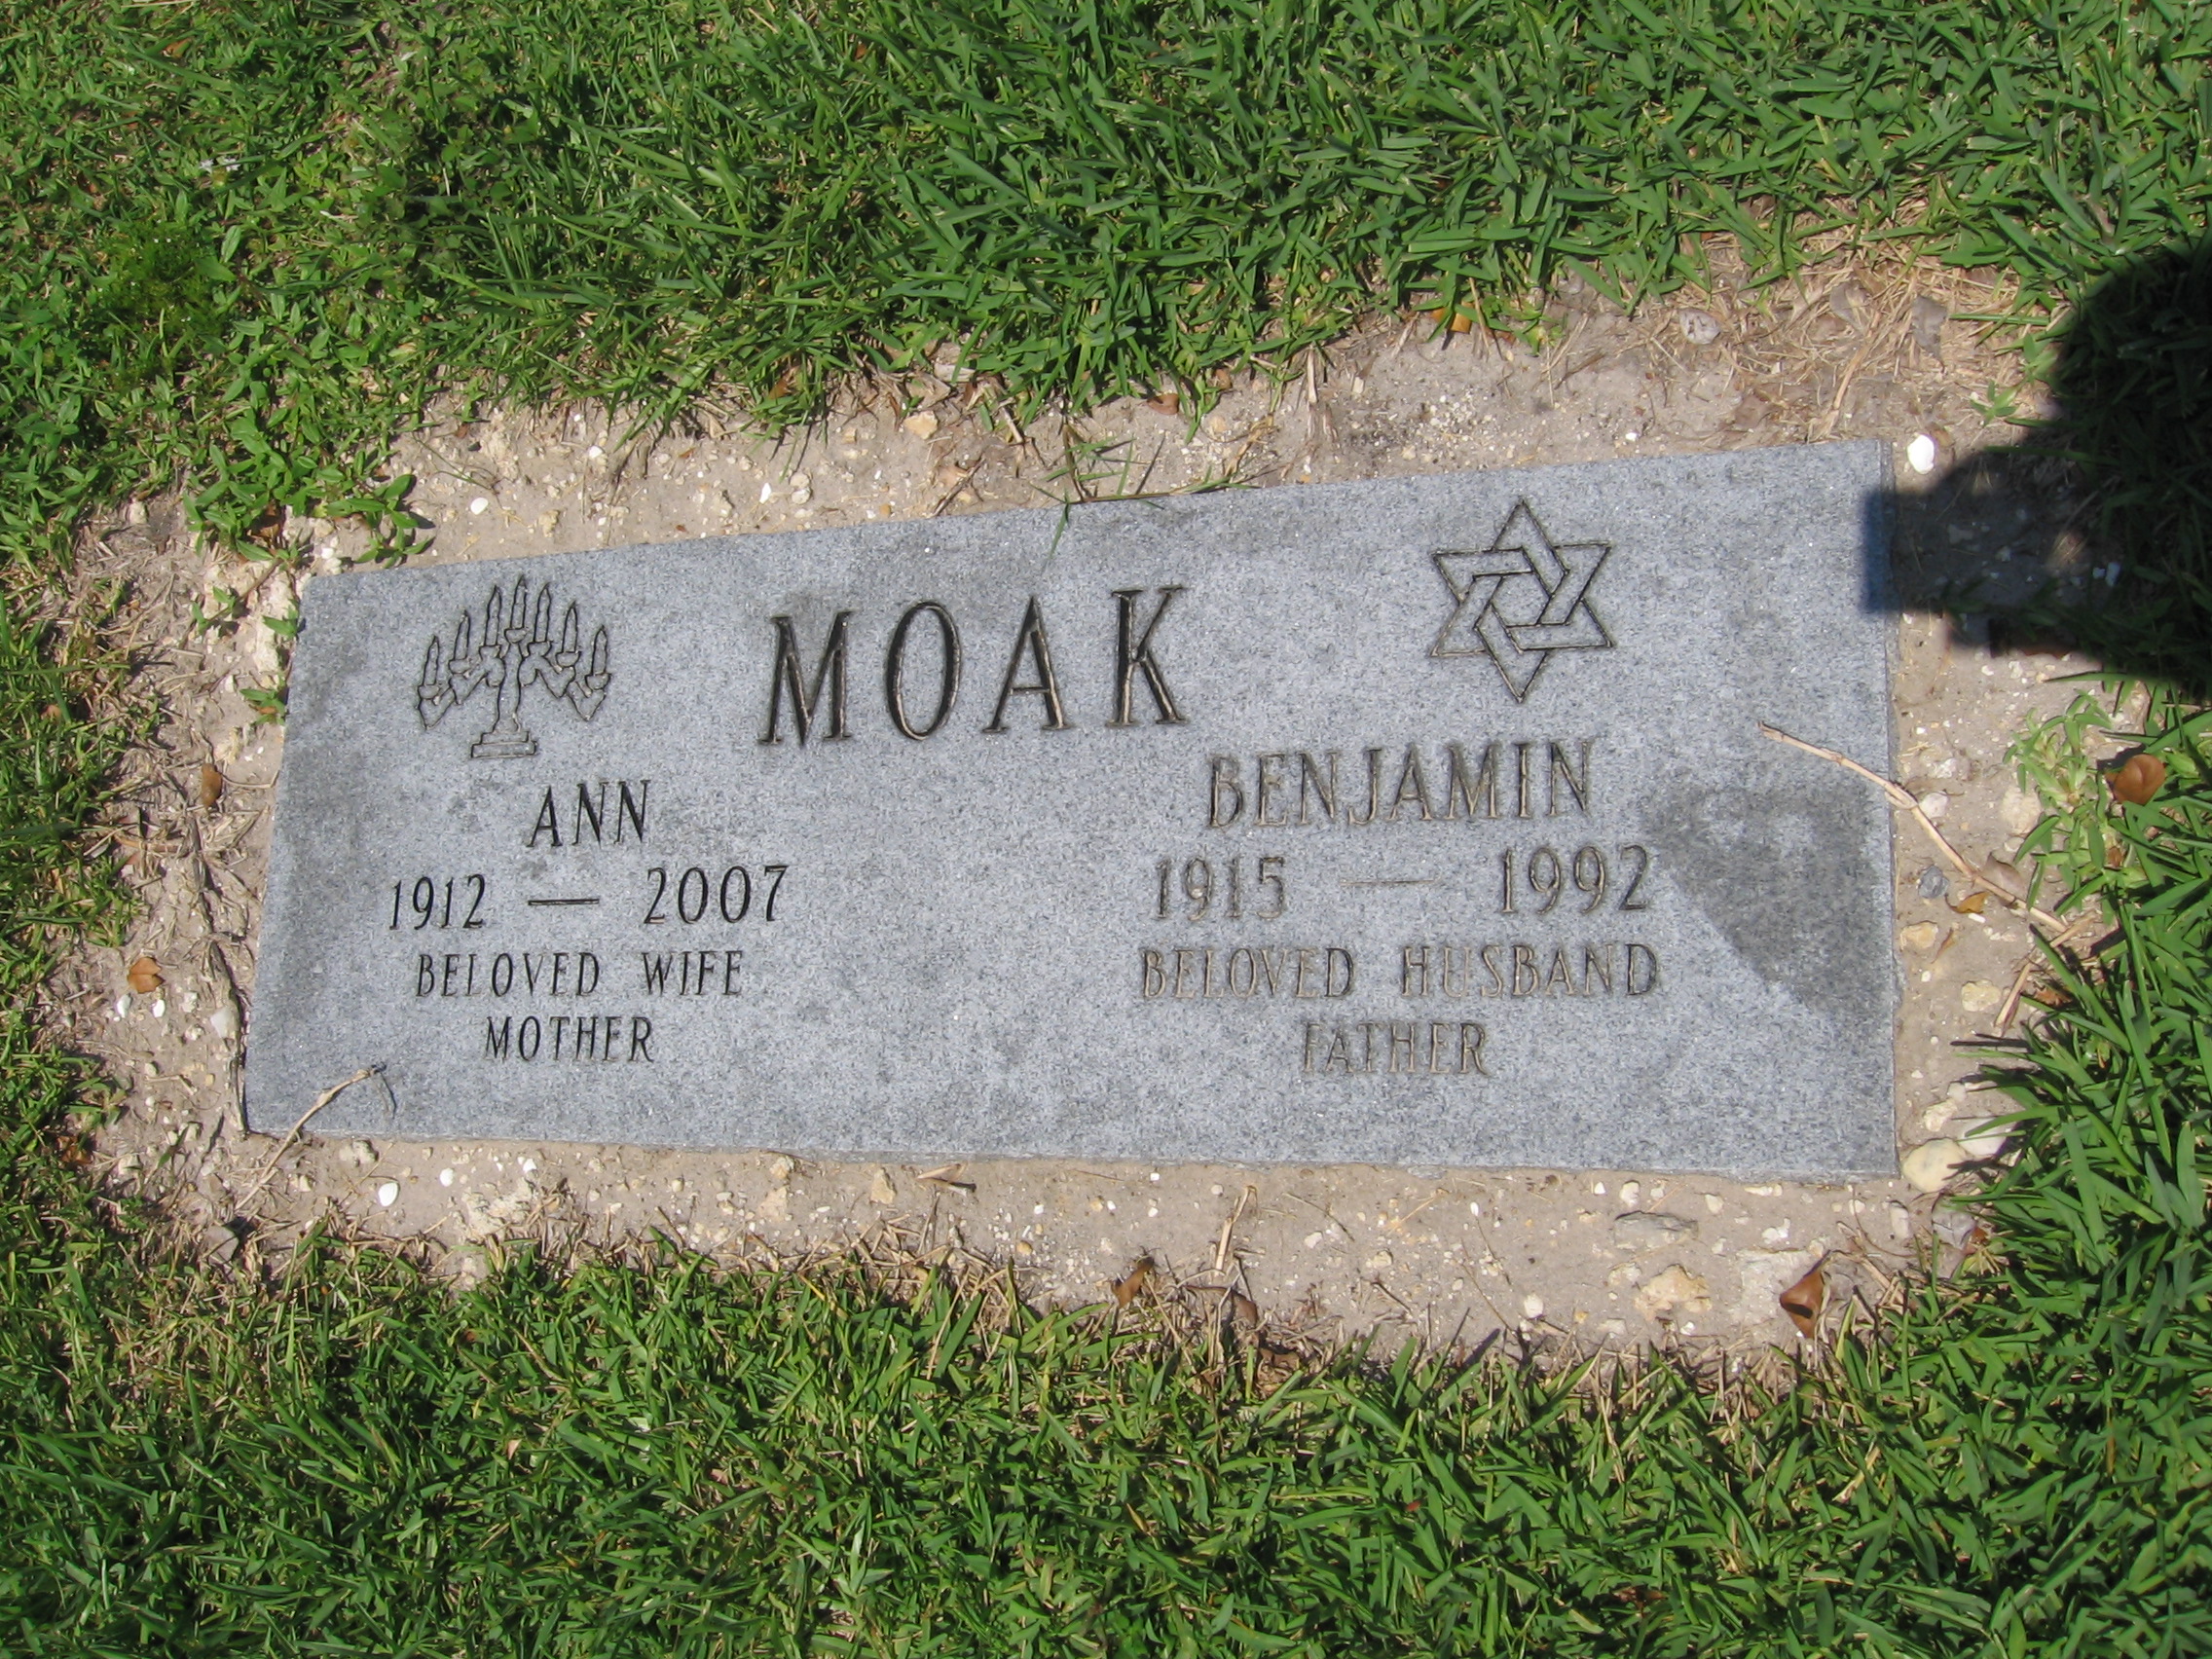 Ann Moak